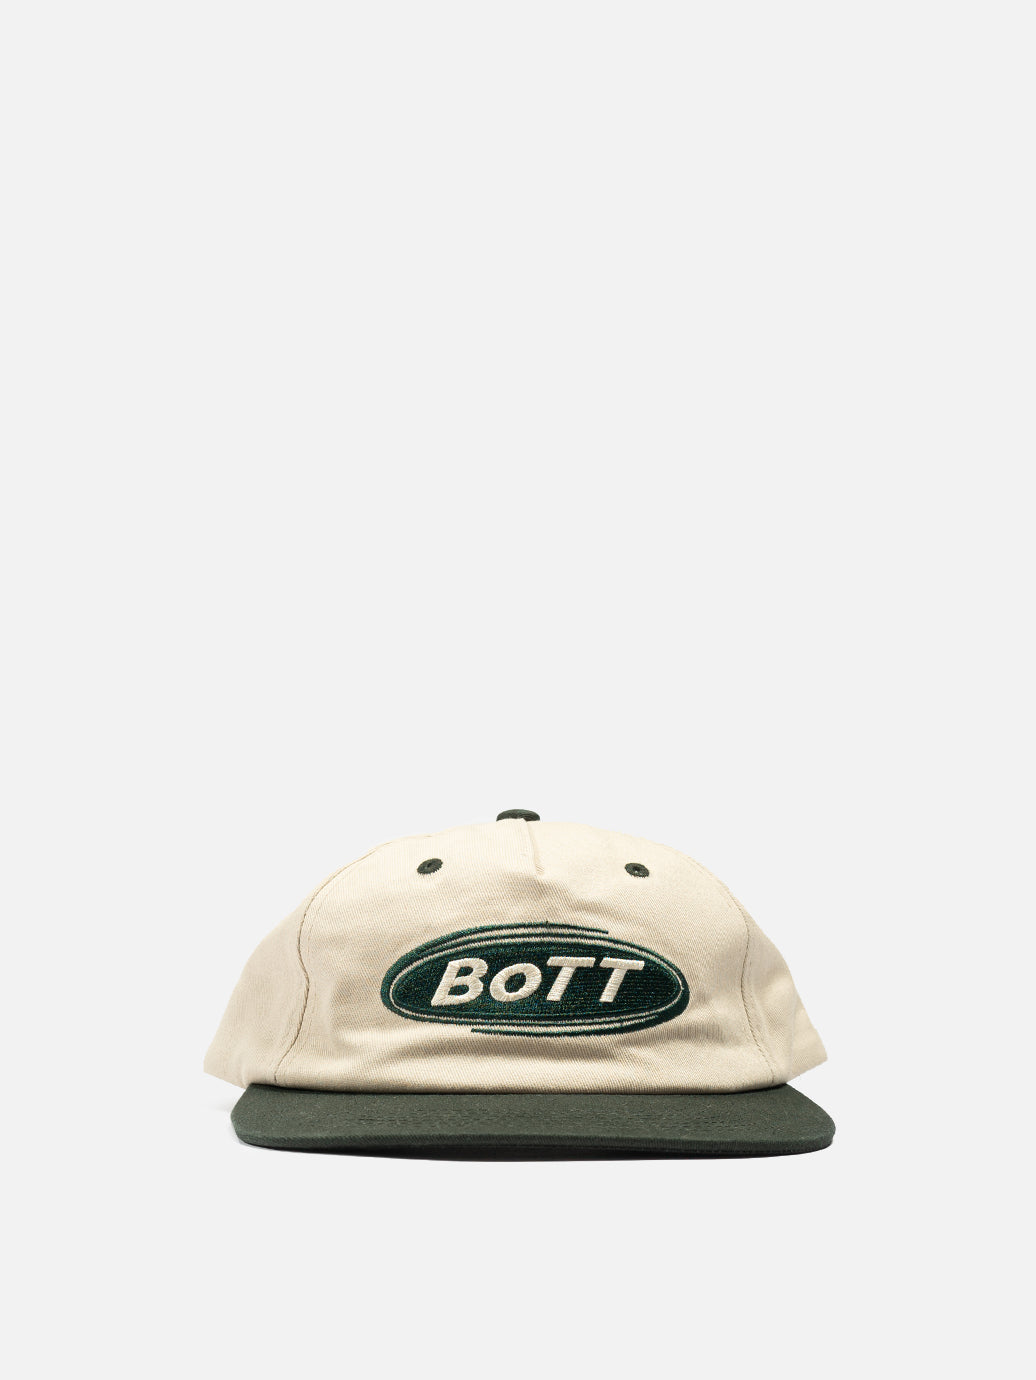 BoTT Light Logo 5 Panel Cap(navy)キャップ - キャップ